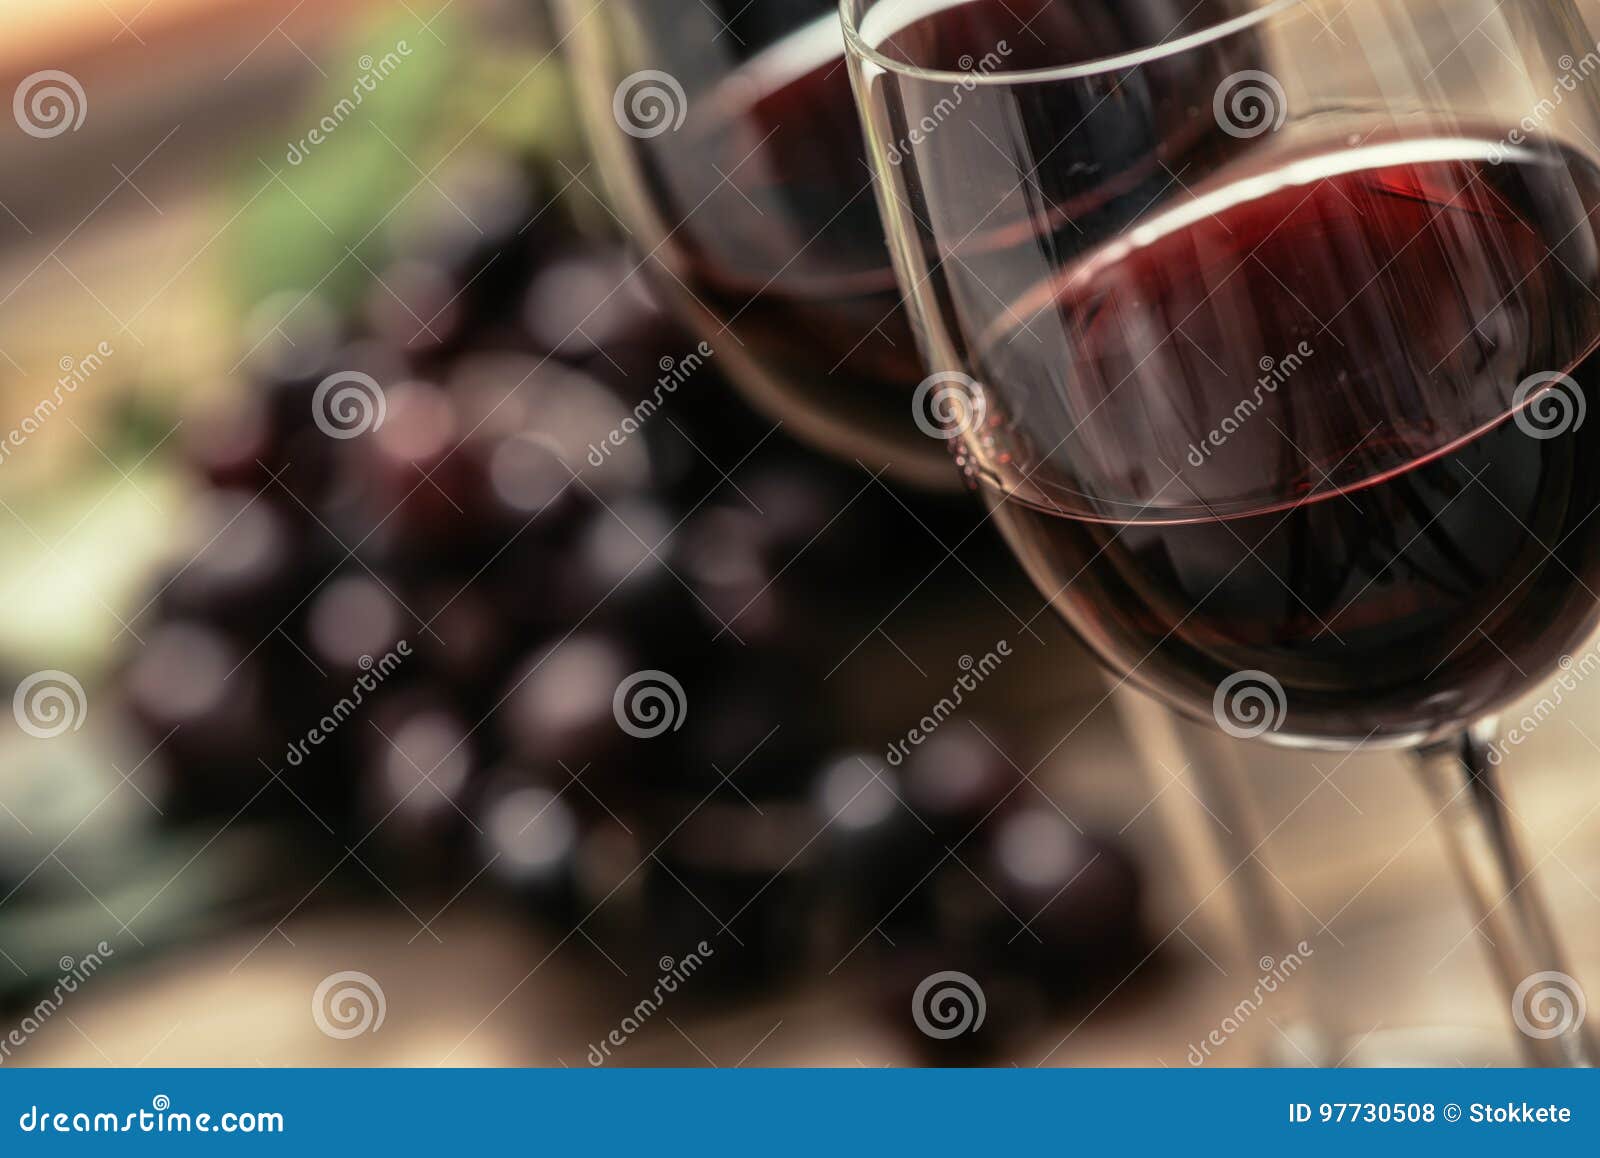 red wine tasting